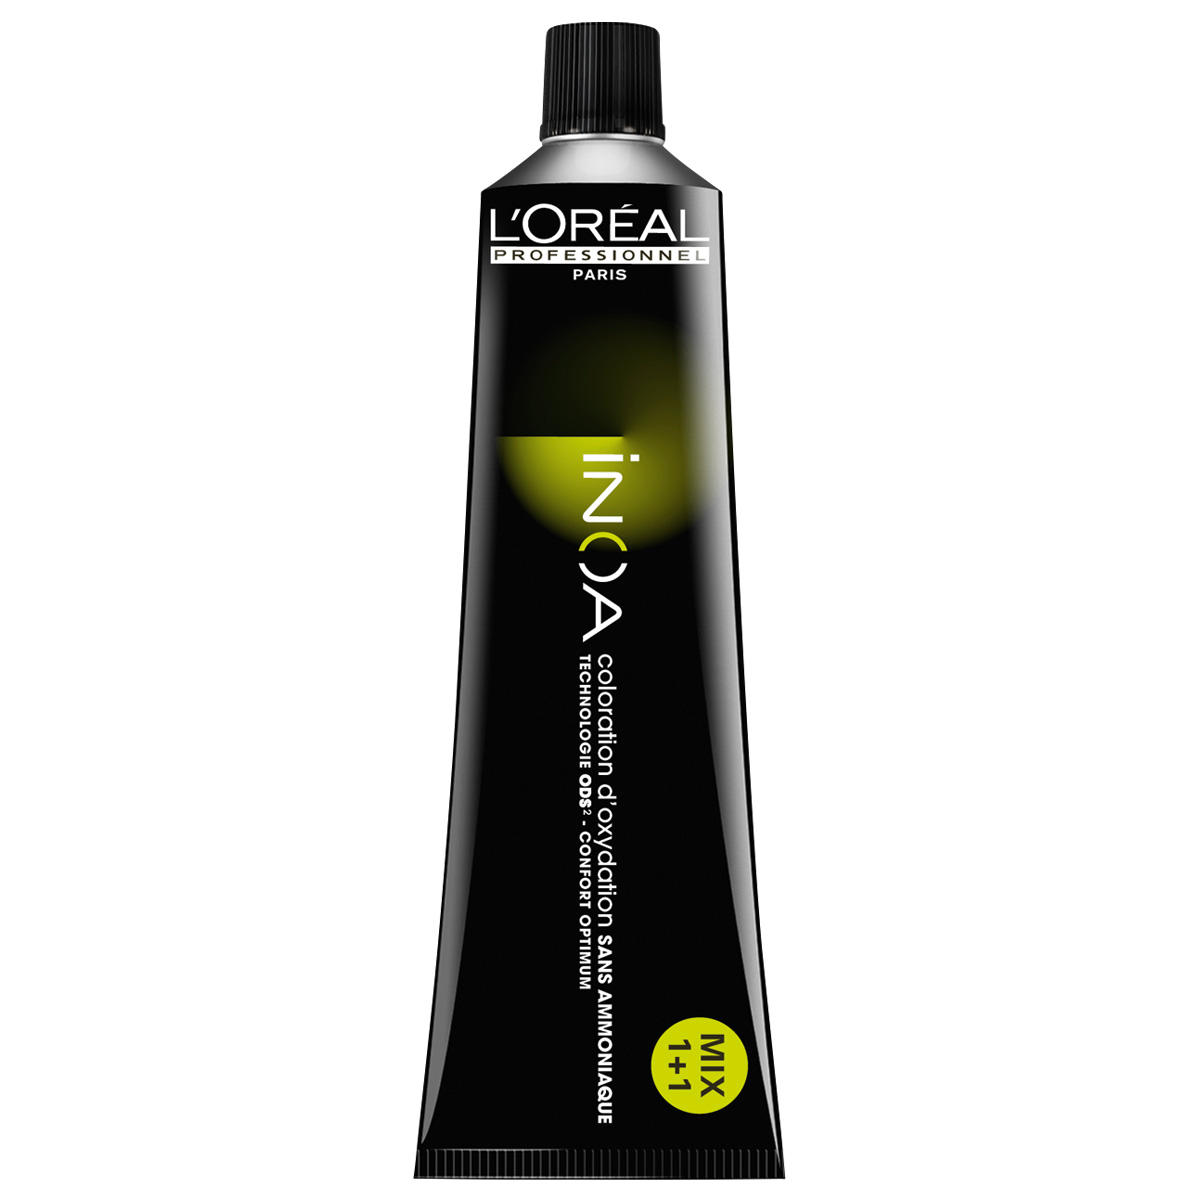 L'Oréal Professionnel Paris Coloration Transparente, tubo de 60 ml